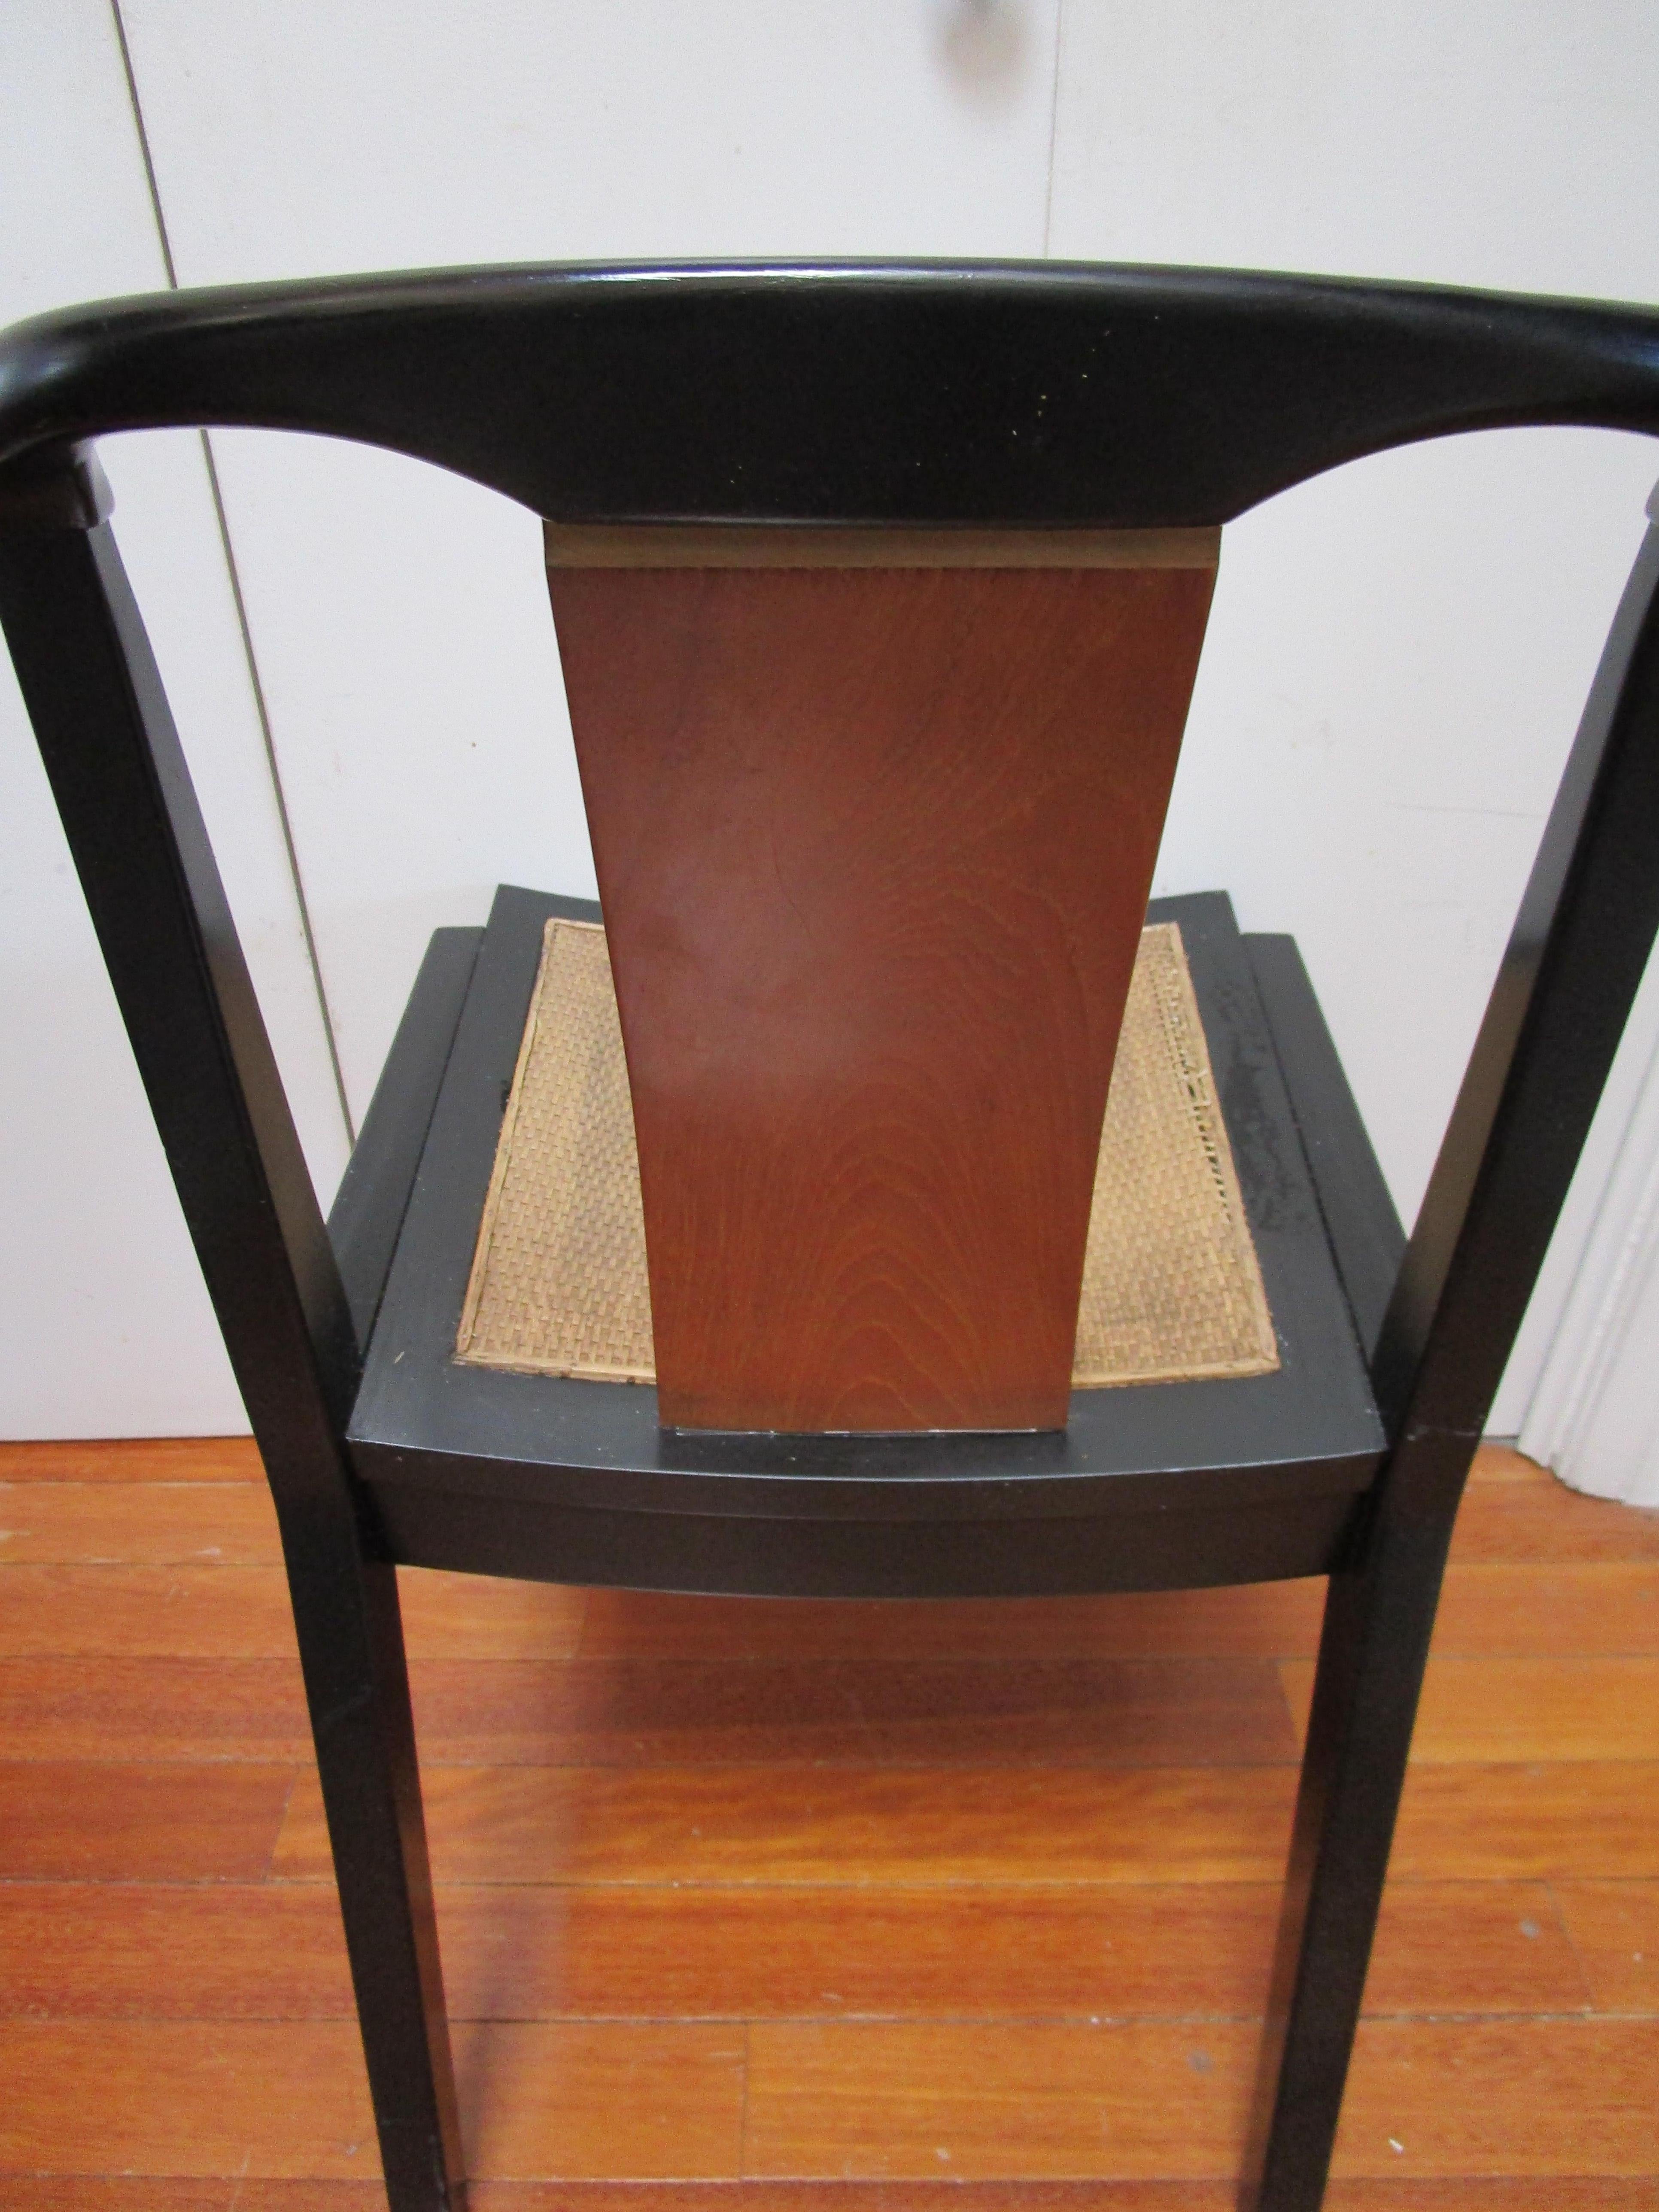 Dieses Stück mit hohem Sammlerwert stammt aus der Baker Far East Collection'S aus den 1950er Jahren. Sie ist einzigartig. Der Stuhl wurde als Teil eines zweiteiligen Sets mit einem Schreibtisch entworfen. Mit der charakteristischen Rückenlehne aus